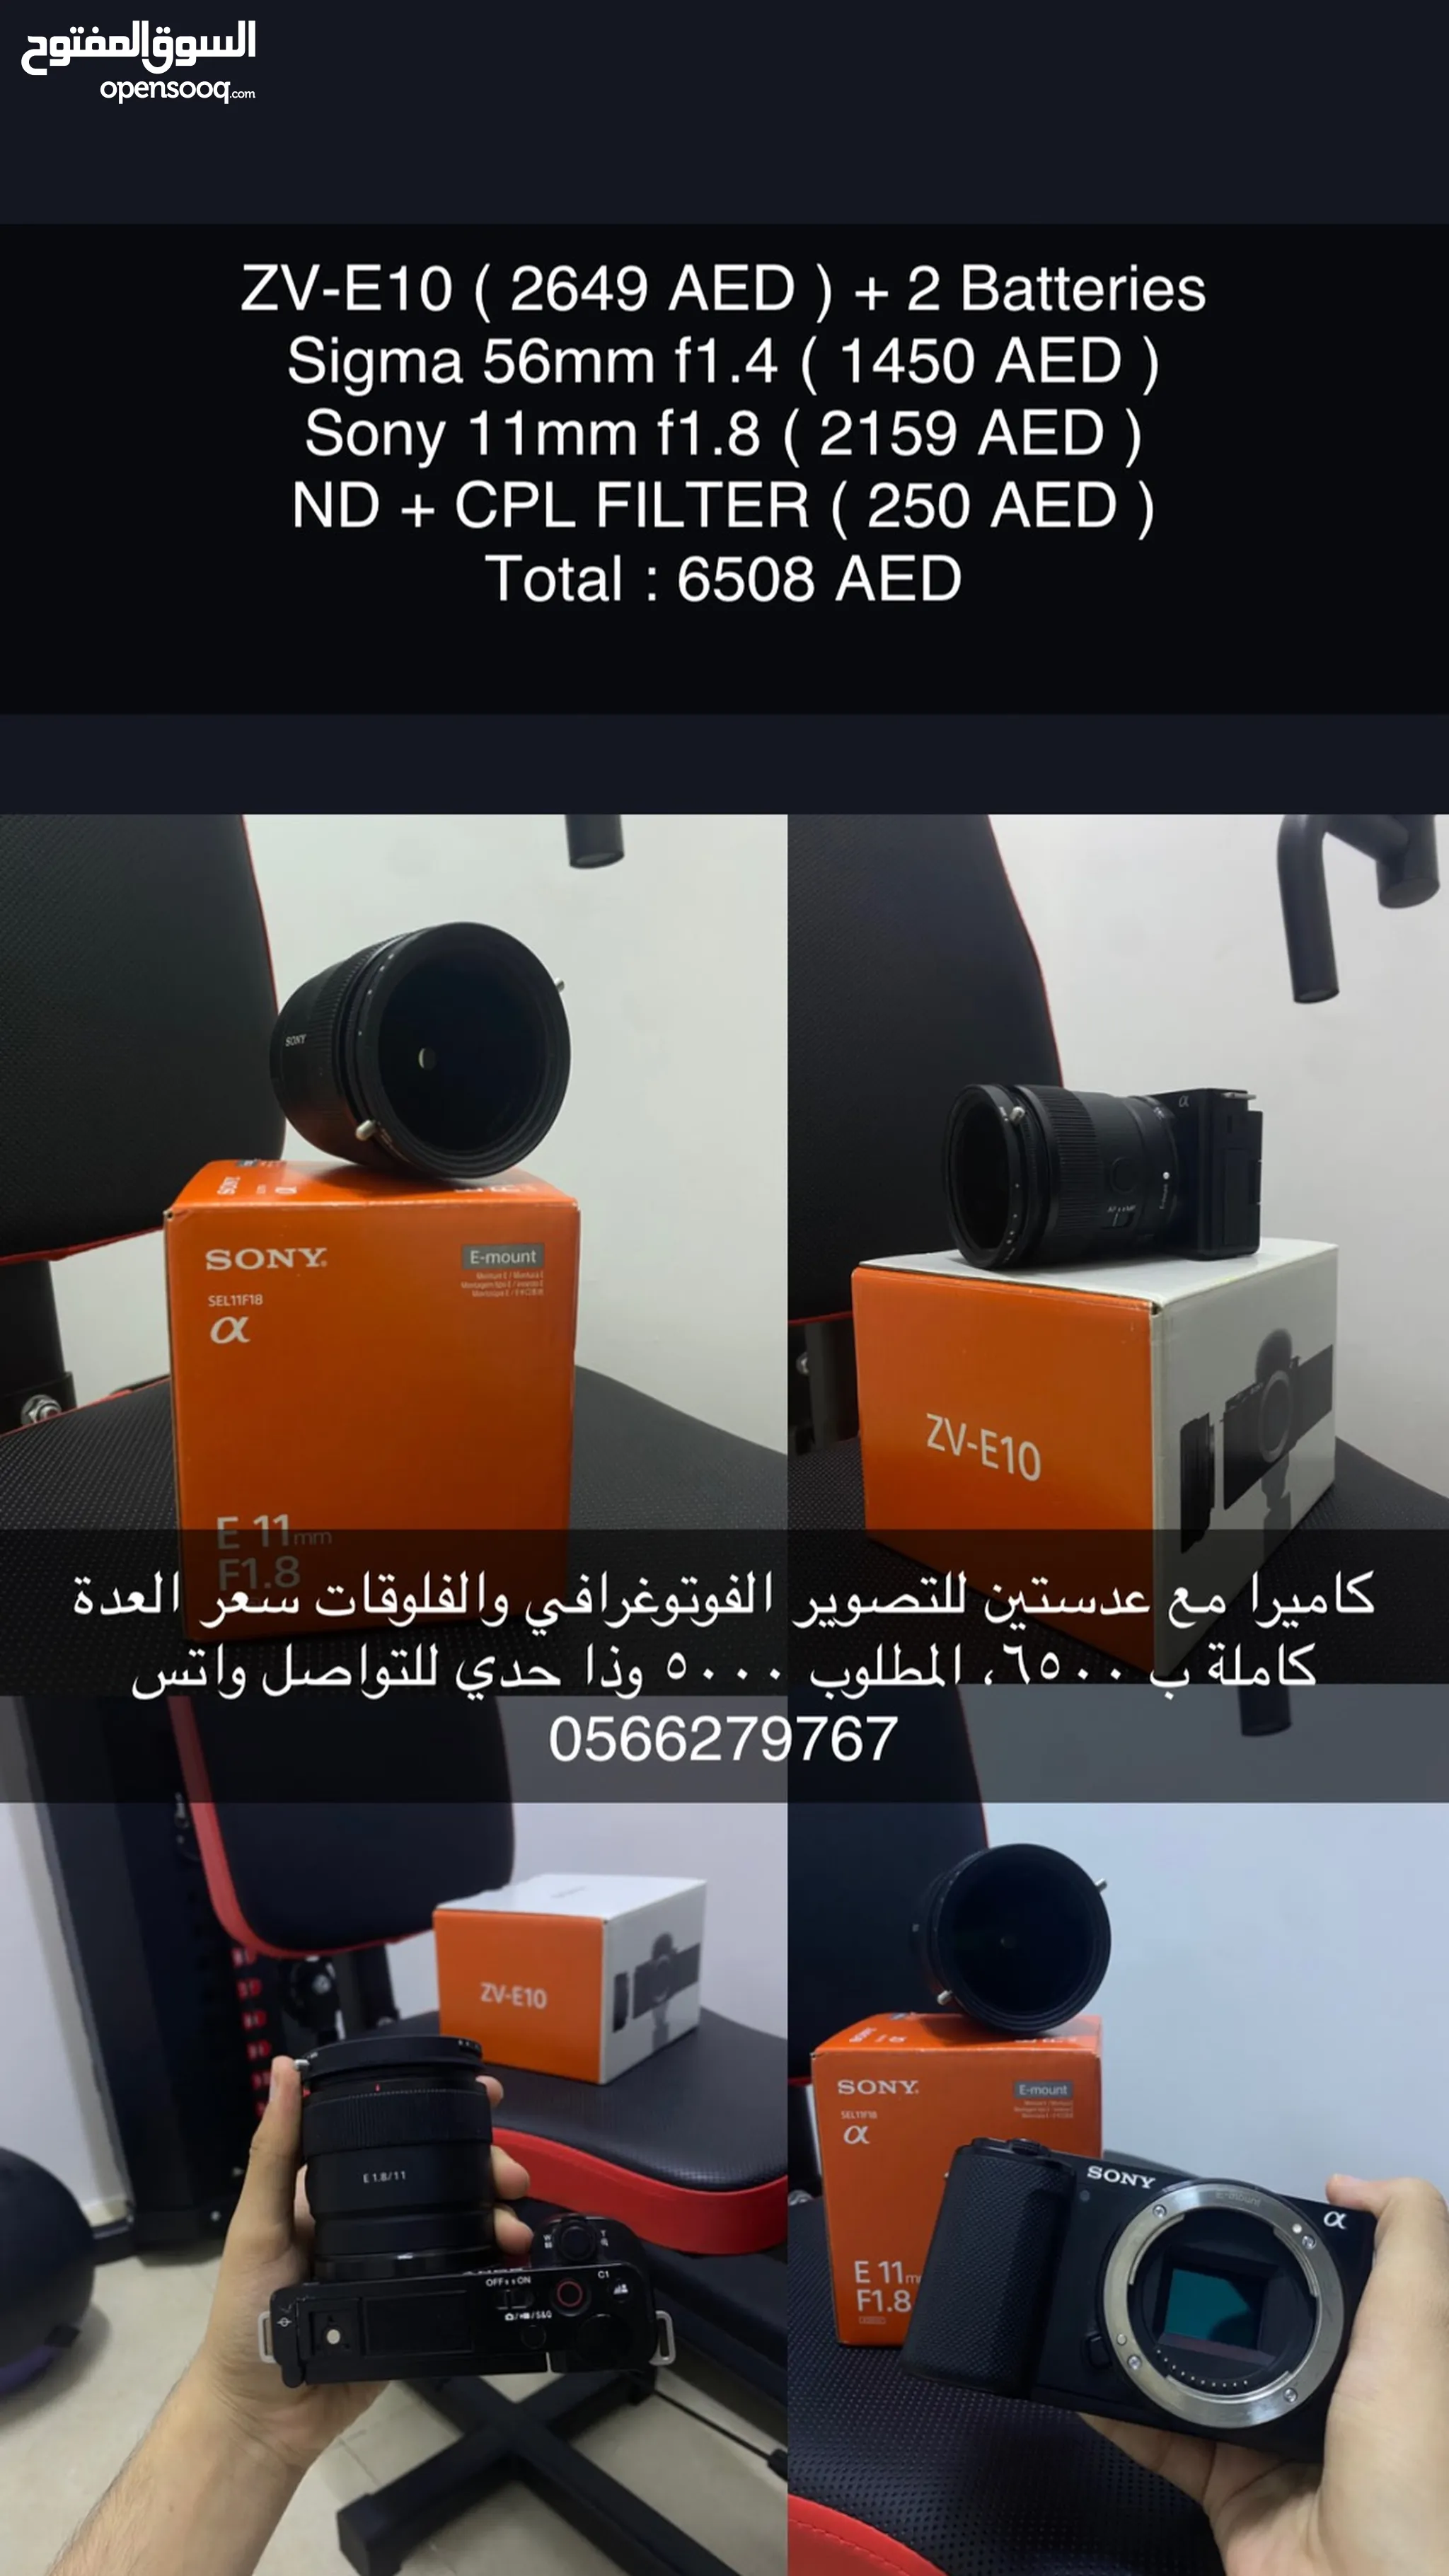 كاميرات تصوير للبيع : تصوير فوتوغرافي : فوري : جديد ومستعمل : أسعار :  الإمارات | السوق المفتوح